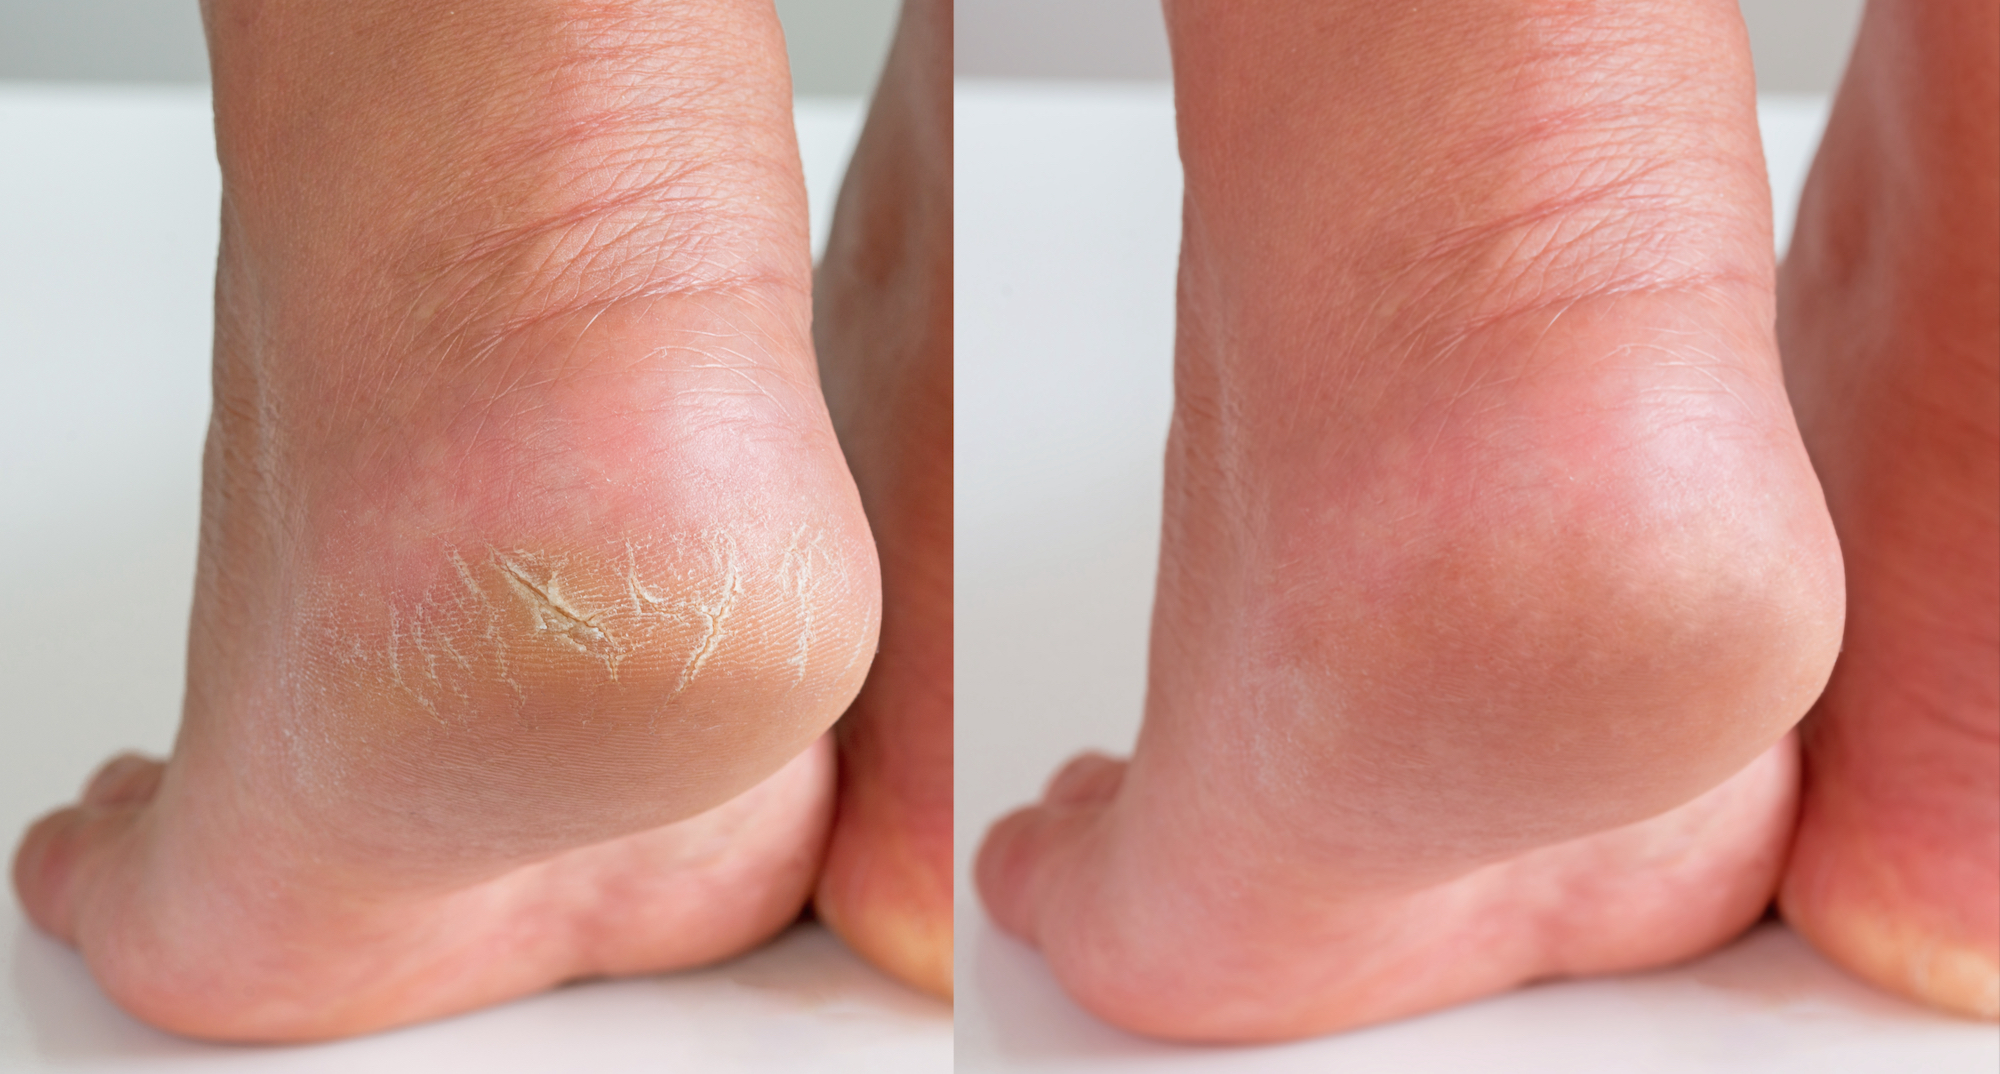 Buy Vaseline Derma Care Cracked Heel Repair Foot Cream - Sensitive Skin,  With Barrier Repair Complex Online at Best Price of Rs 75 - bigbasket